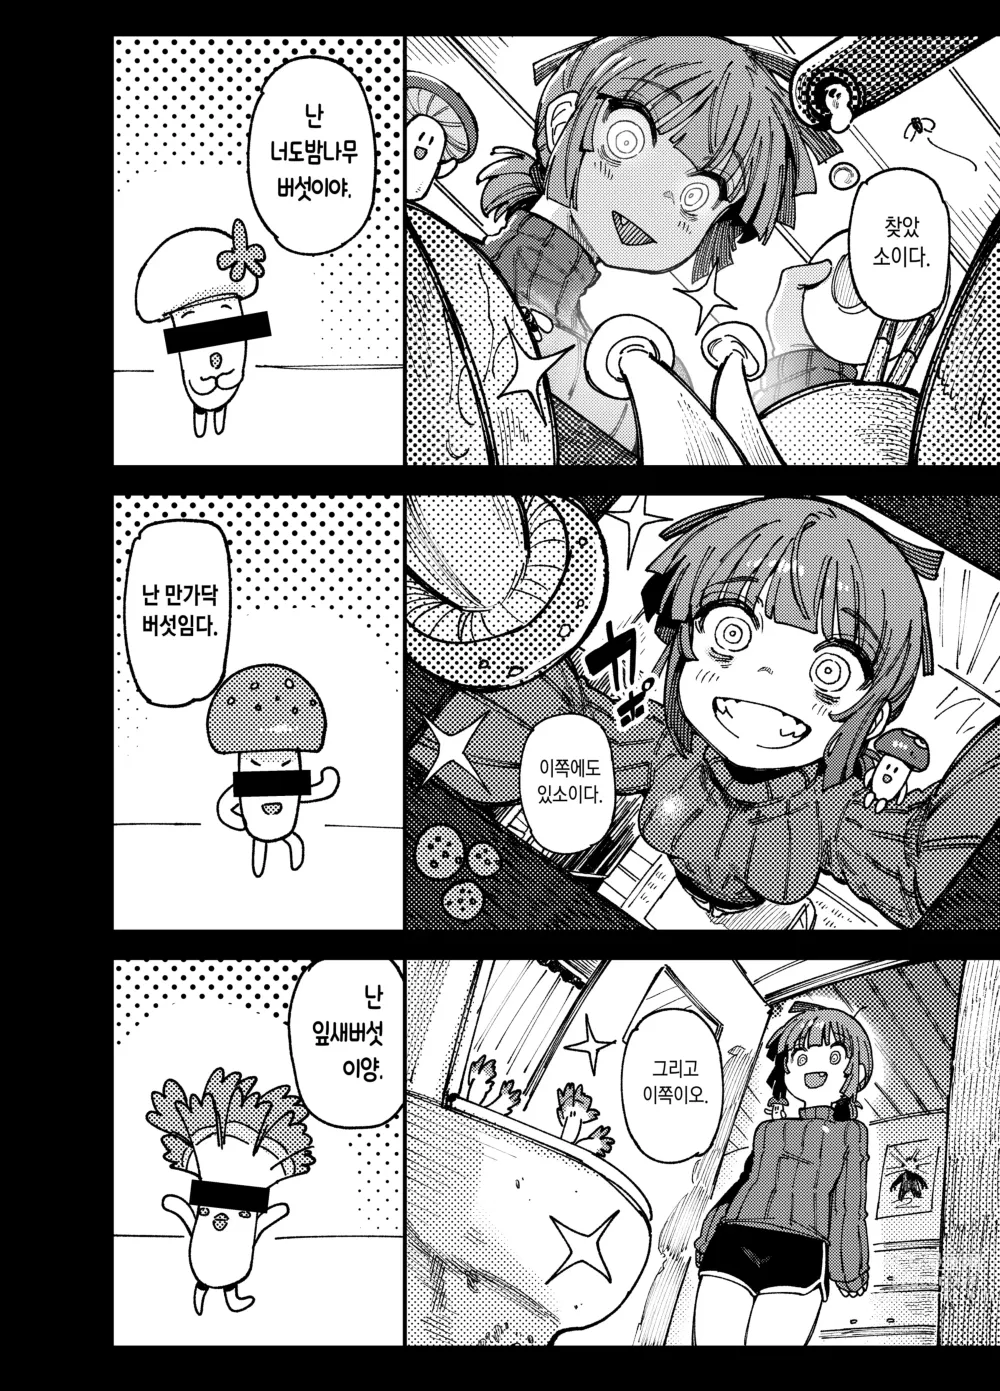 Page 7 of doujinshi 집이 너무 습해서 생긴 환각을 유발하는 버섯을 잘못 먹고 발정난 뒤의 이야기